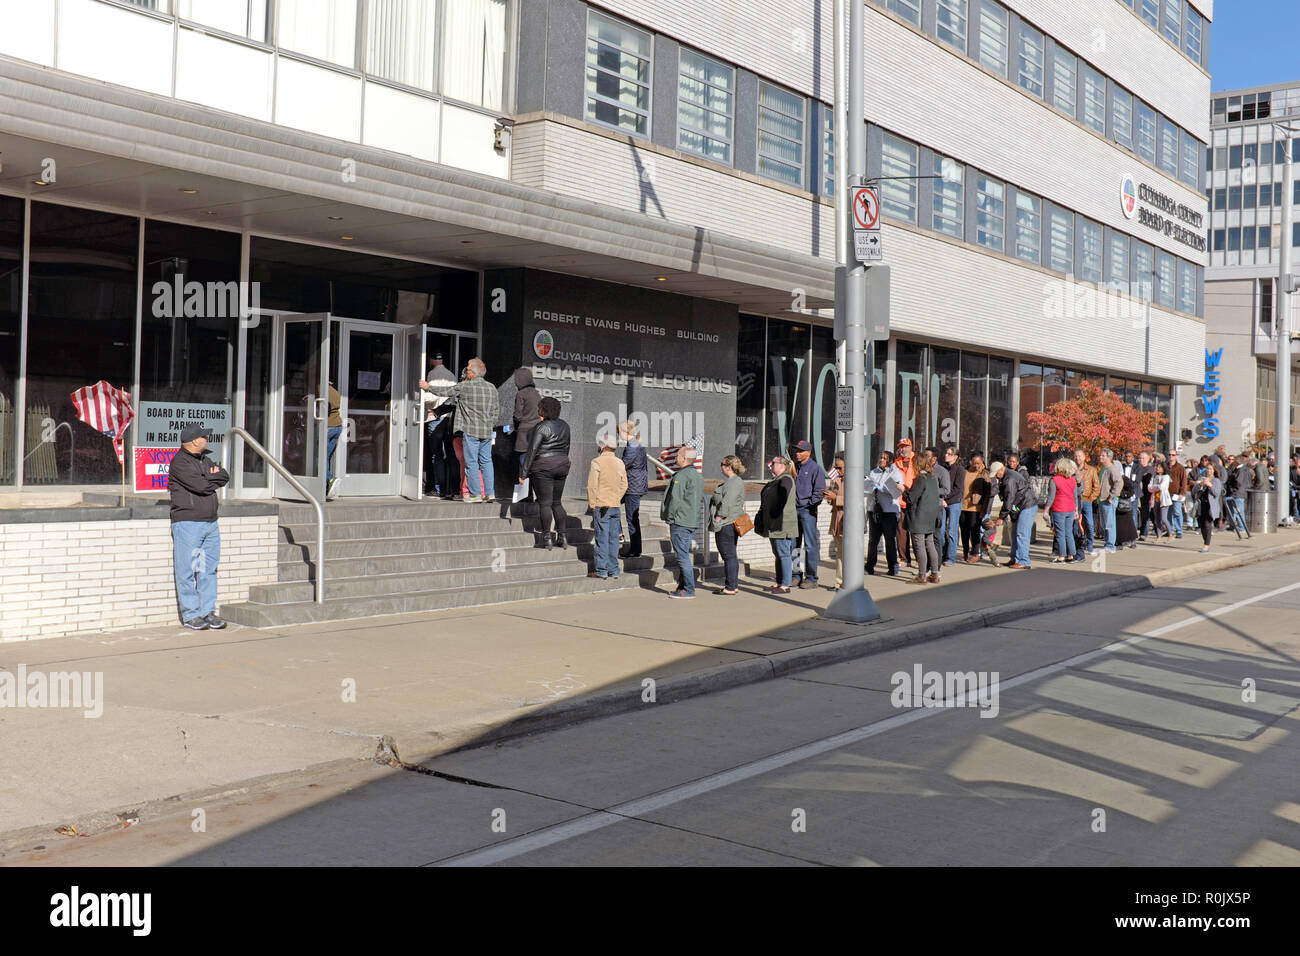 Wähler warten in der Innenstadt von Cleveland Cuyahoga County Brett von Wahlen ihre Stimmen während der 2018 midterm Wahlen zu werfen. Stockfoto